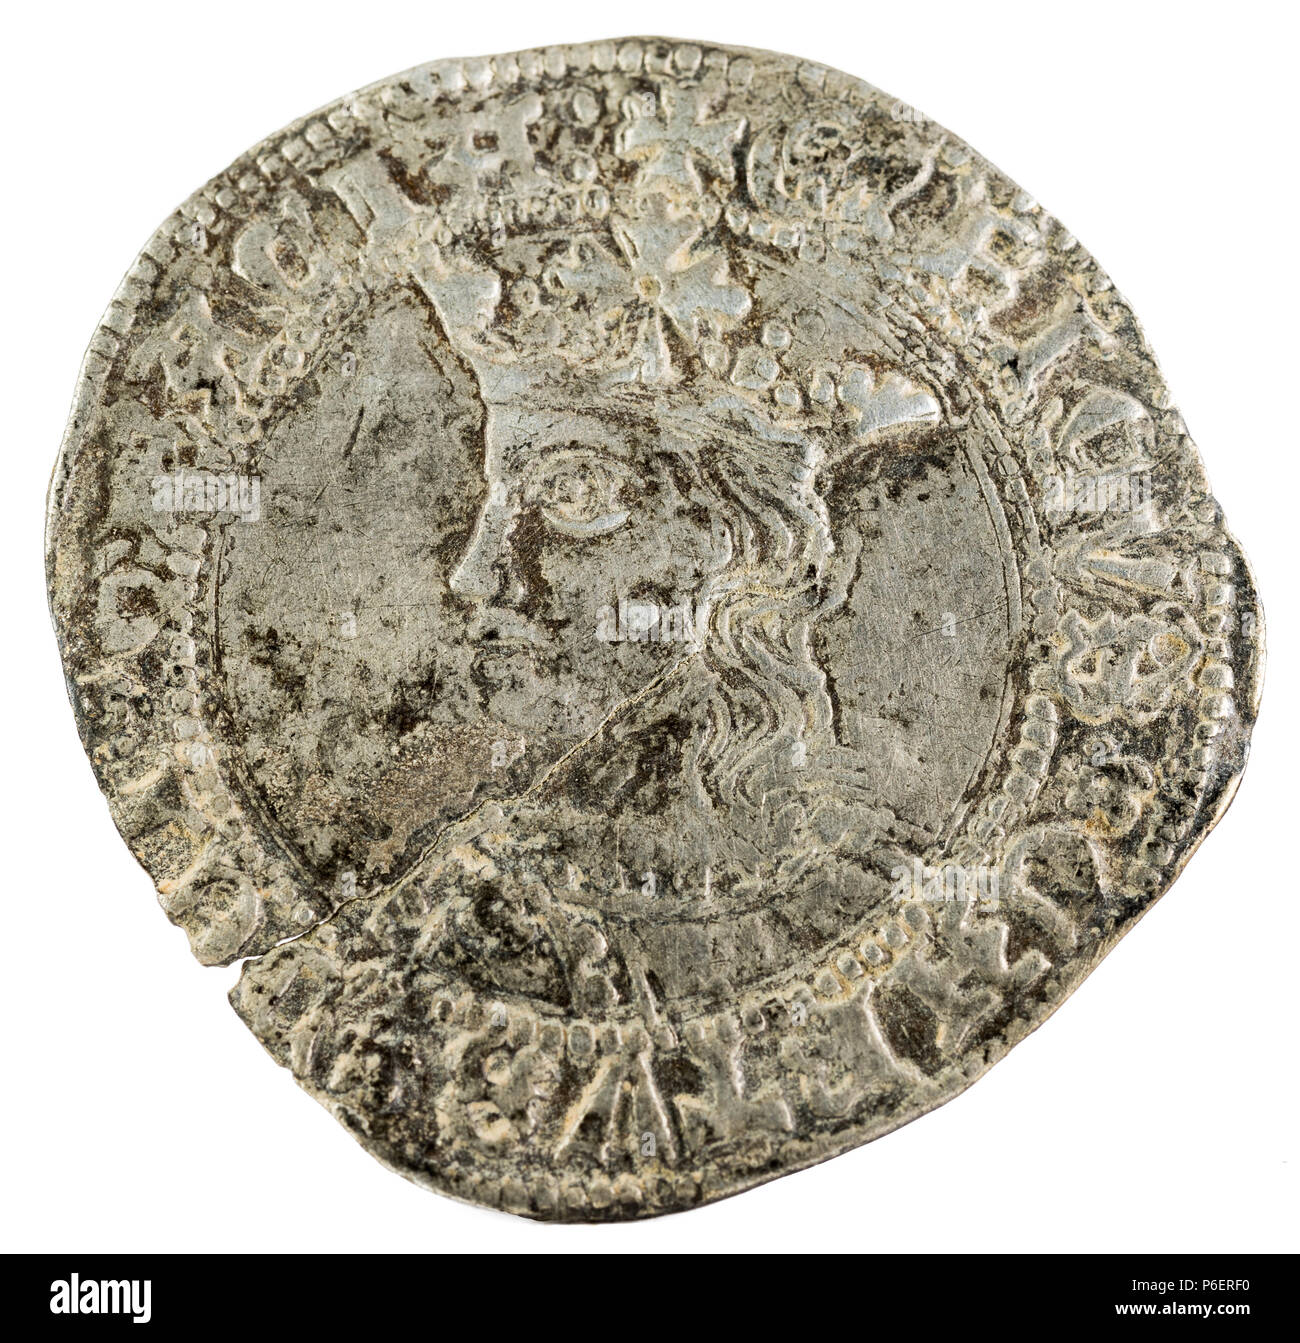 Alte mittelalterliche Silber Münze des Königs Enrique IV. Real. In Toledo geprägt. Spanien. Vorderseite. Stockfoto